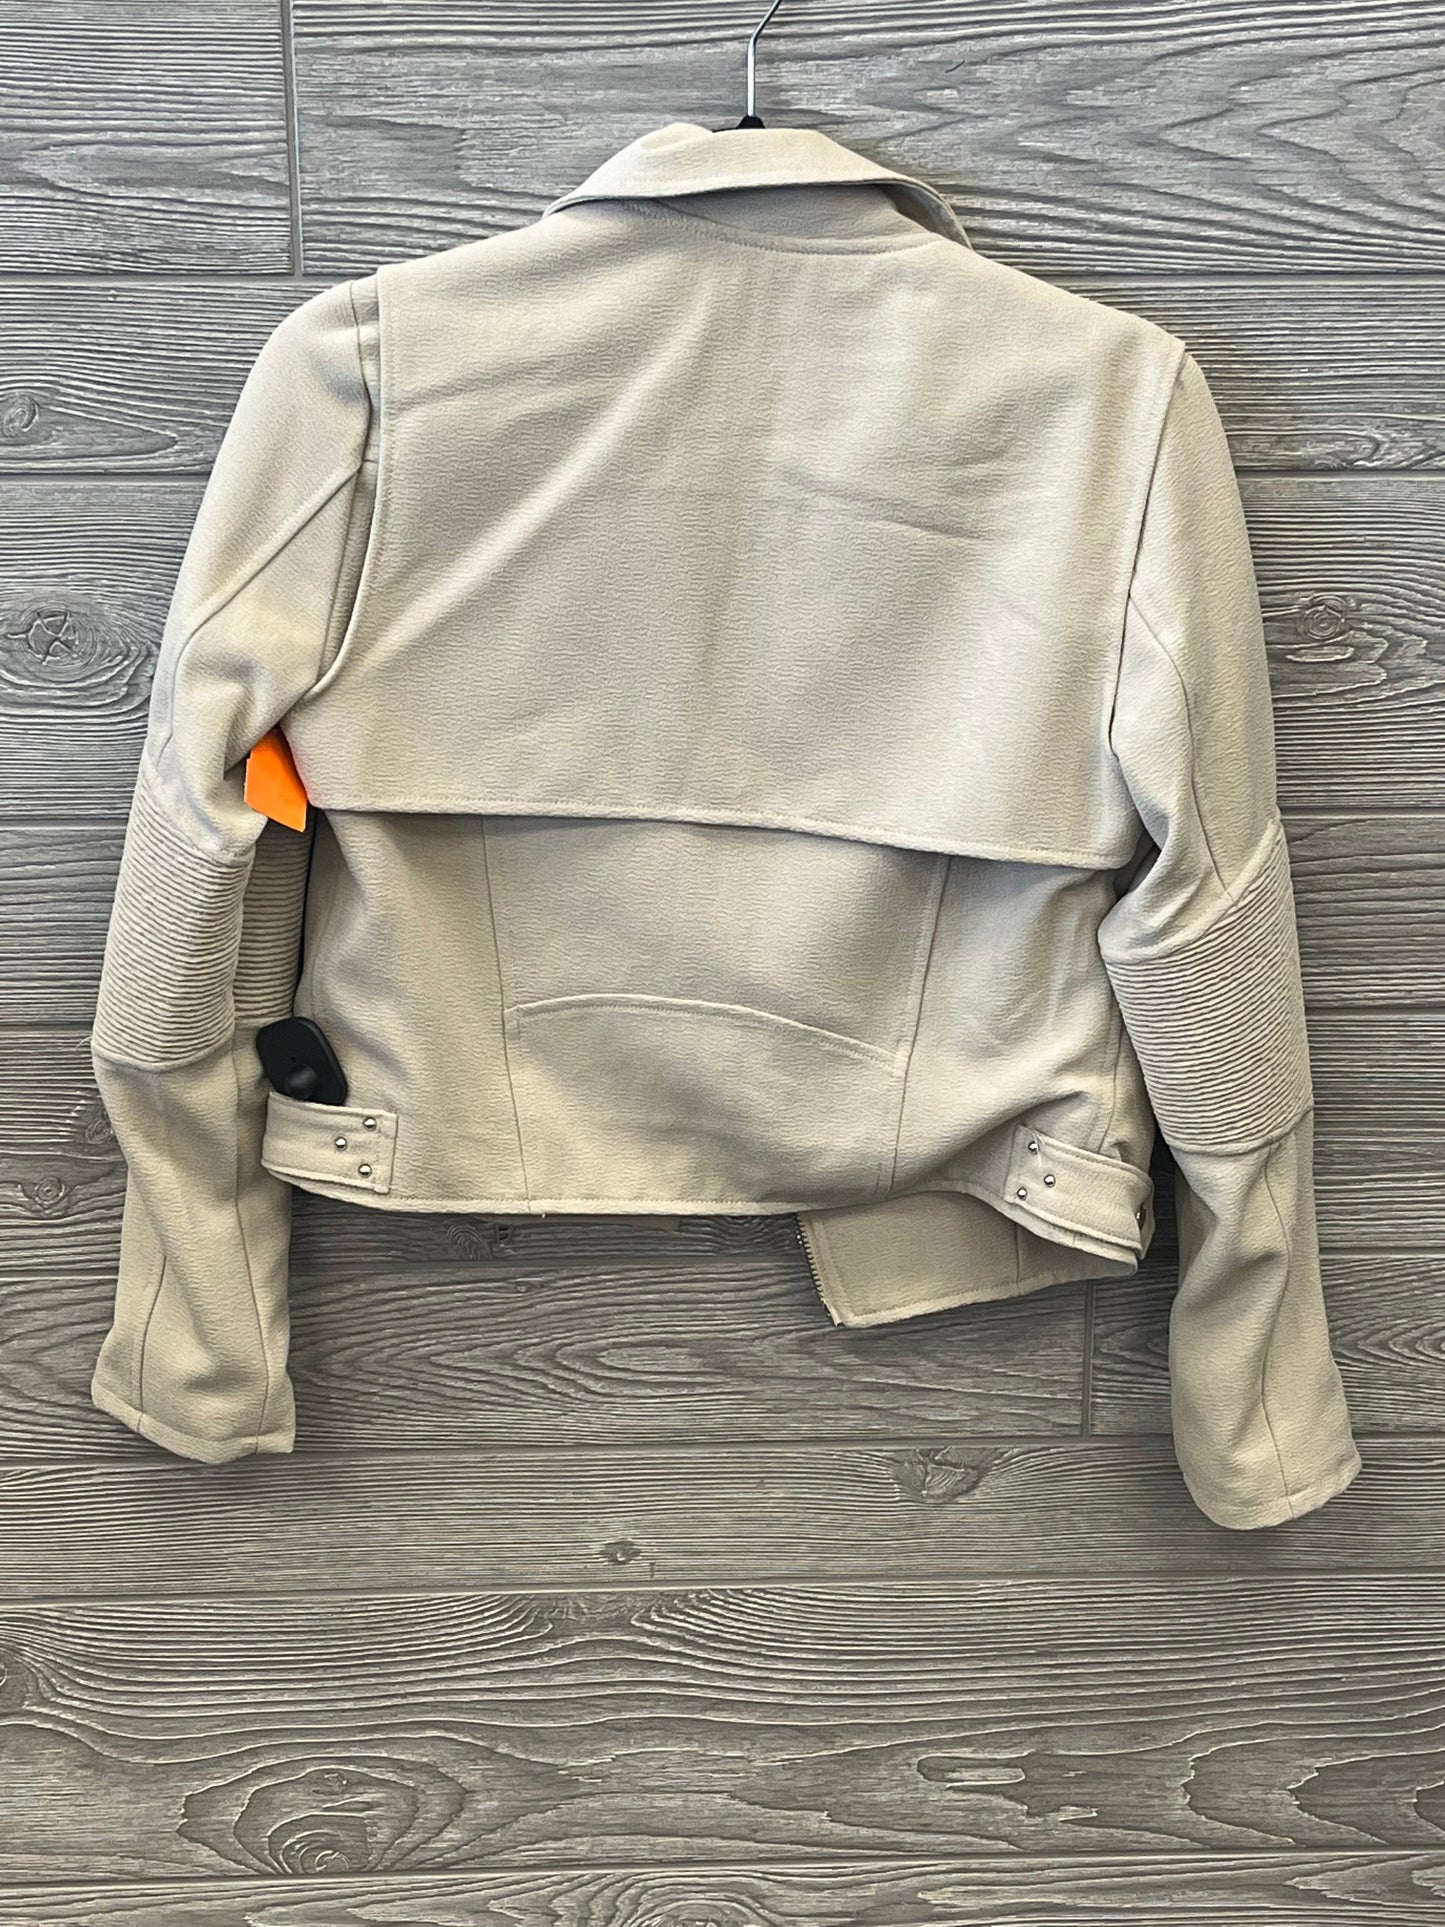 Jacket Moto By Blanknyc  Size: Xs